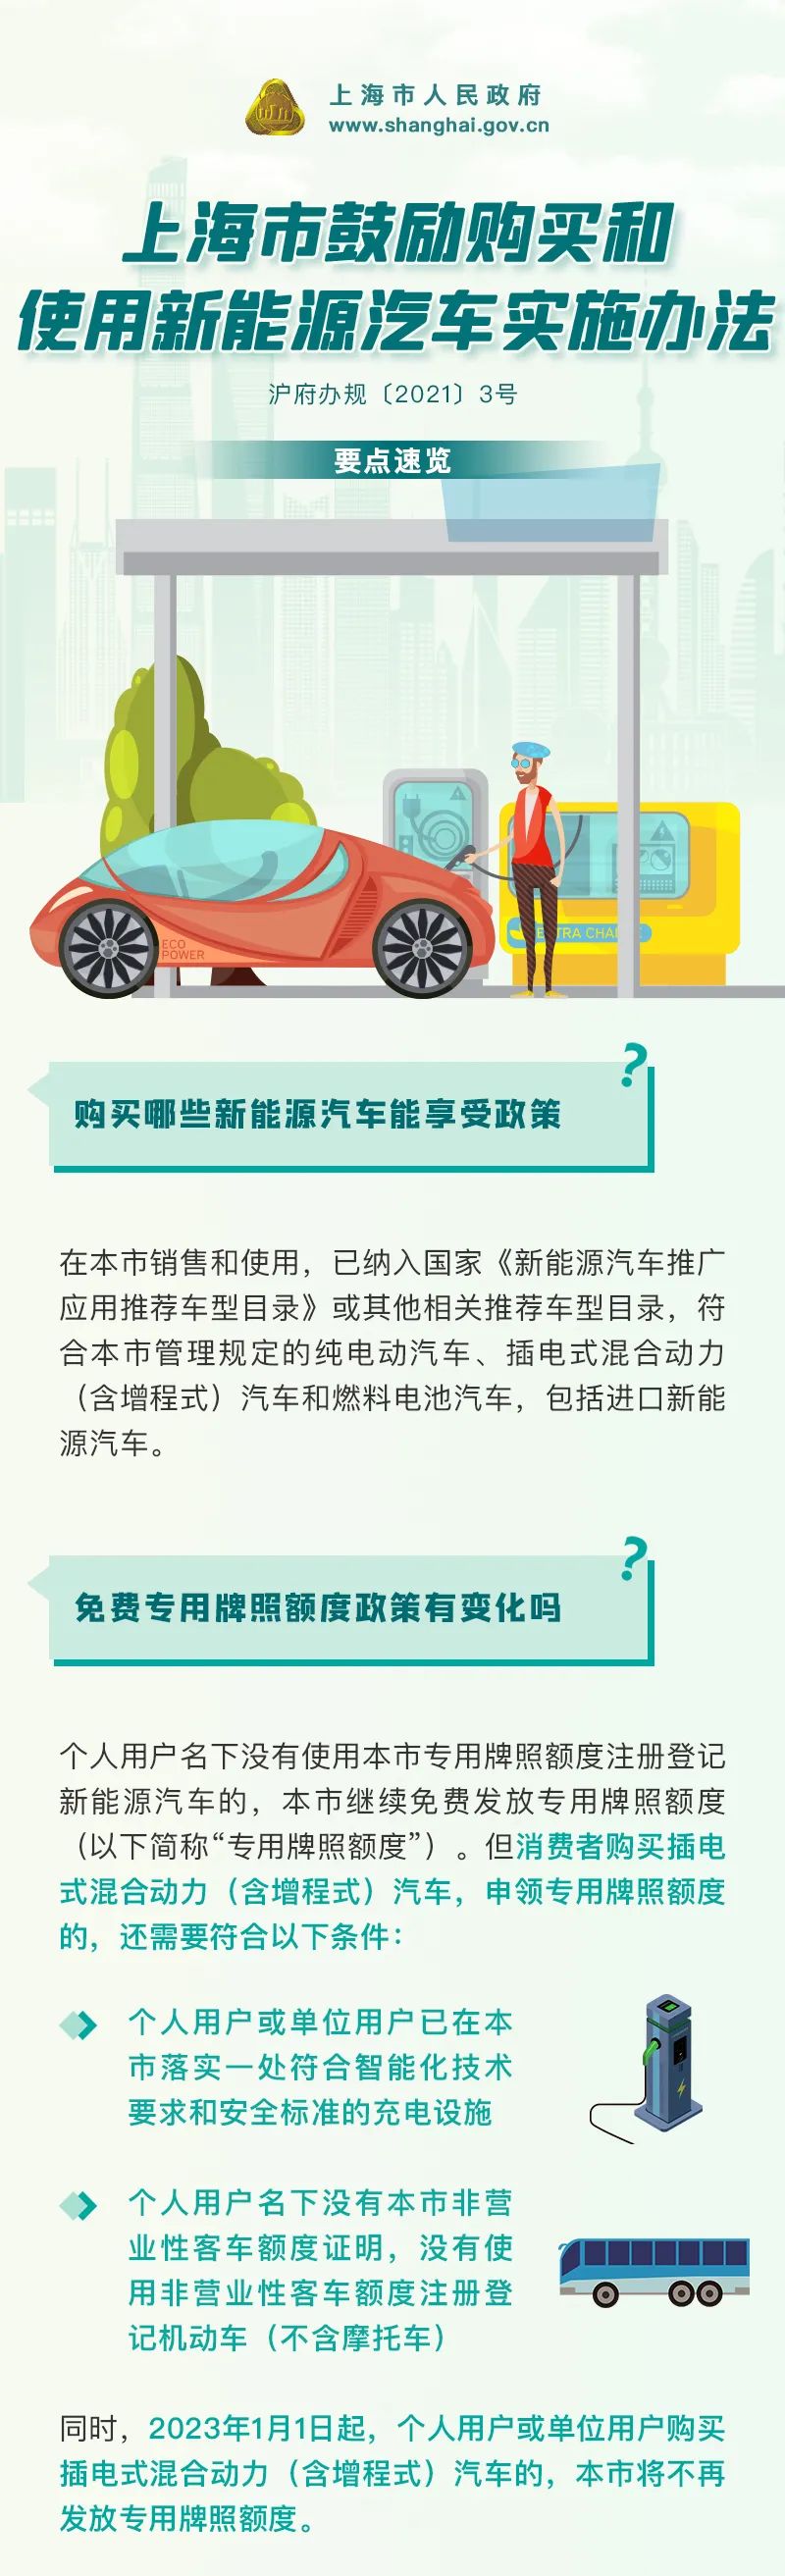 《上海市鼓励购买和使用新能源汽车实施办法》((沪府办规[2021]3号)